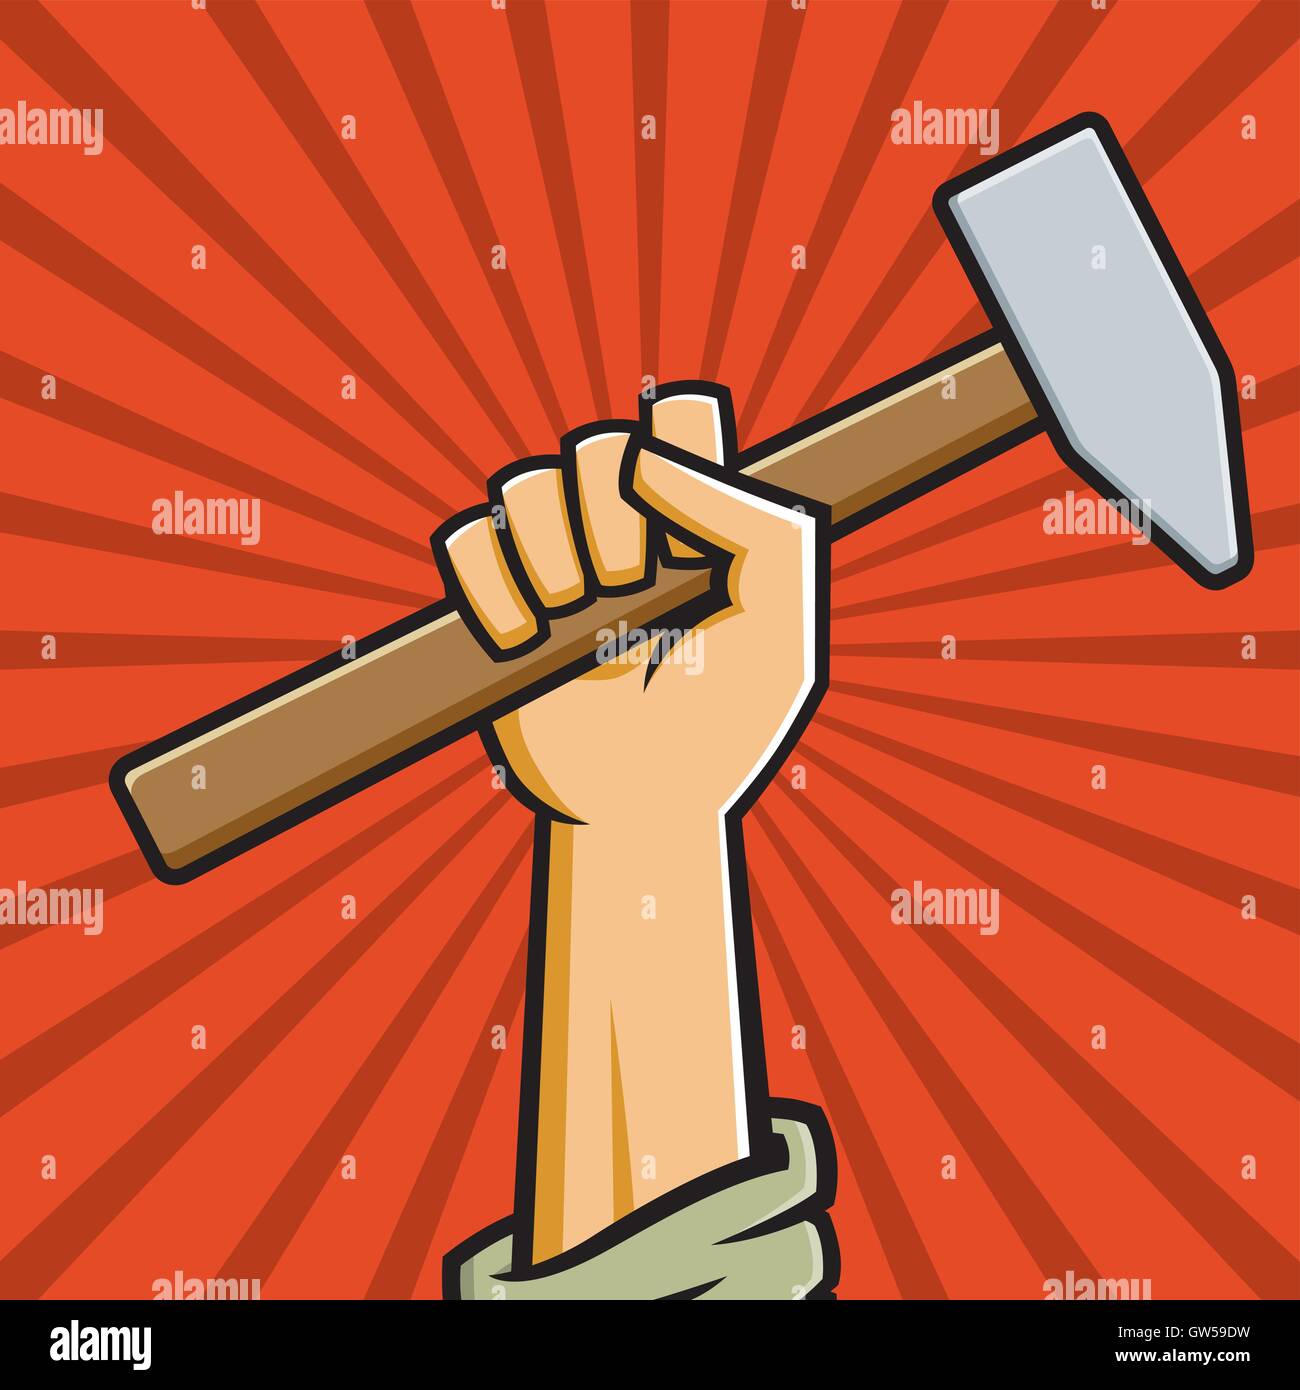 Erhobener sowjetischen Faust hält einen Hammer. Vektor-Illustration im Stil  des russischen konstruktivistischen Propaganda-Plakate Stock-Vektorgrafik -  Alamy